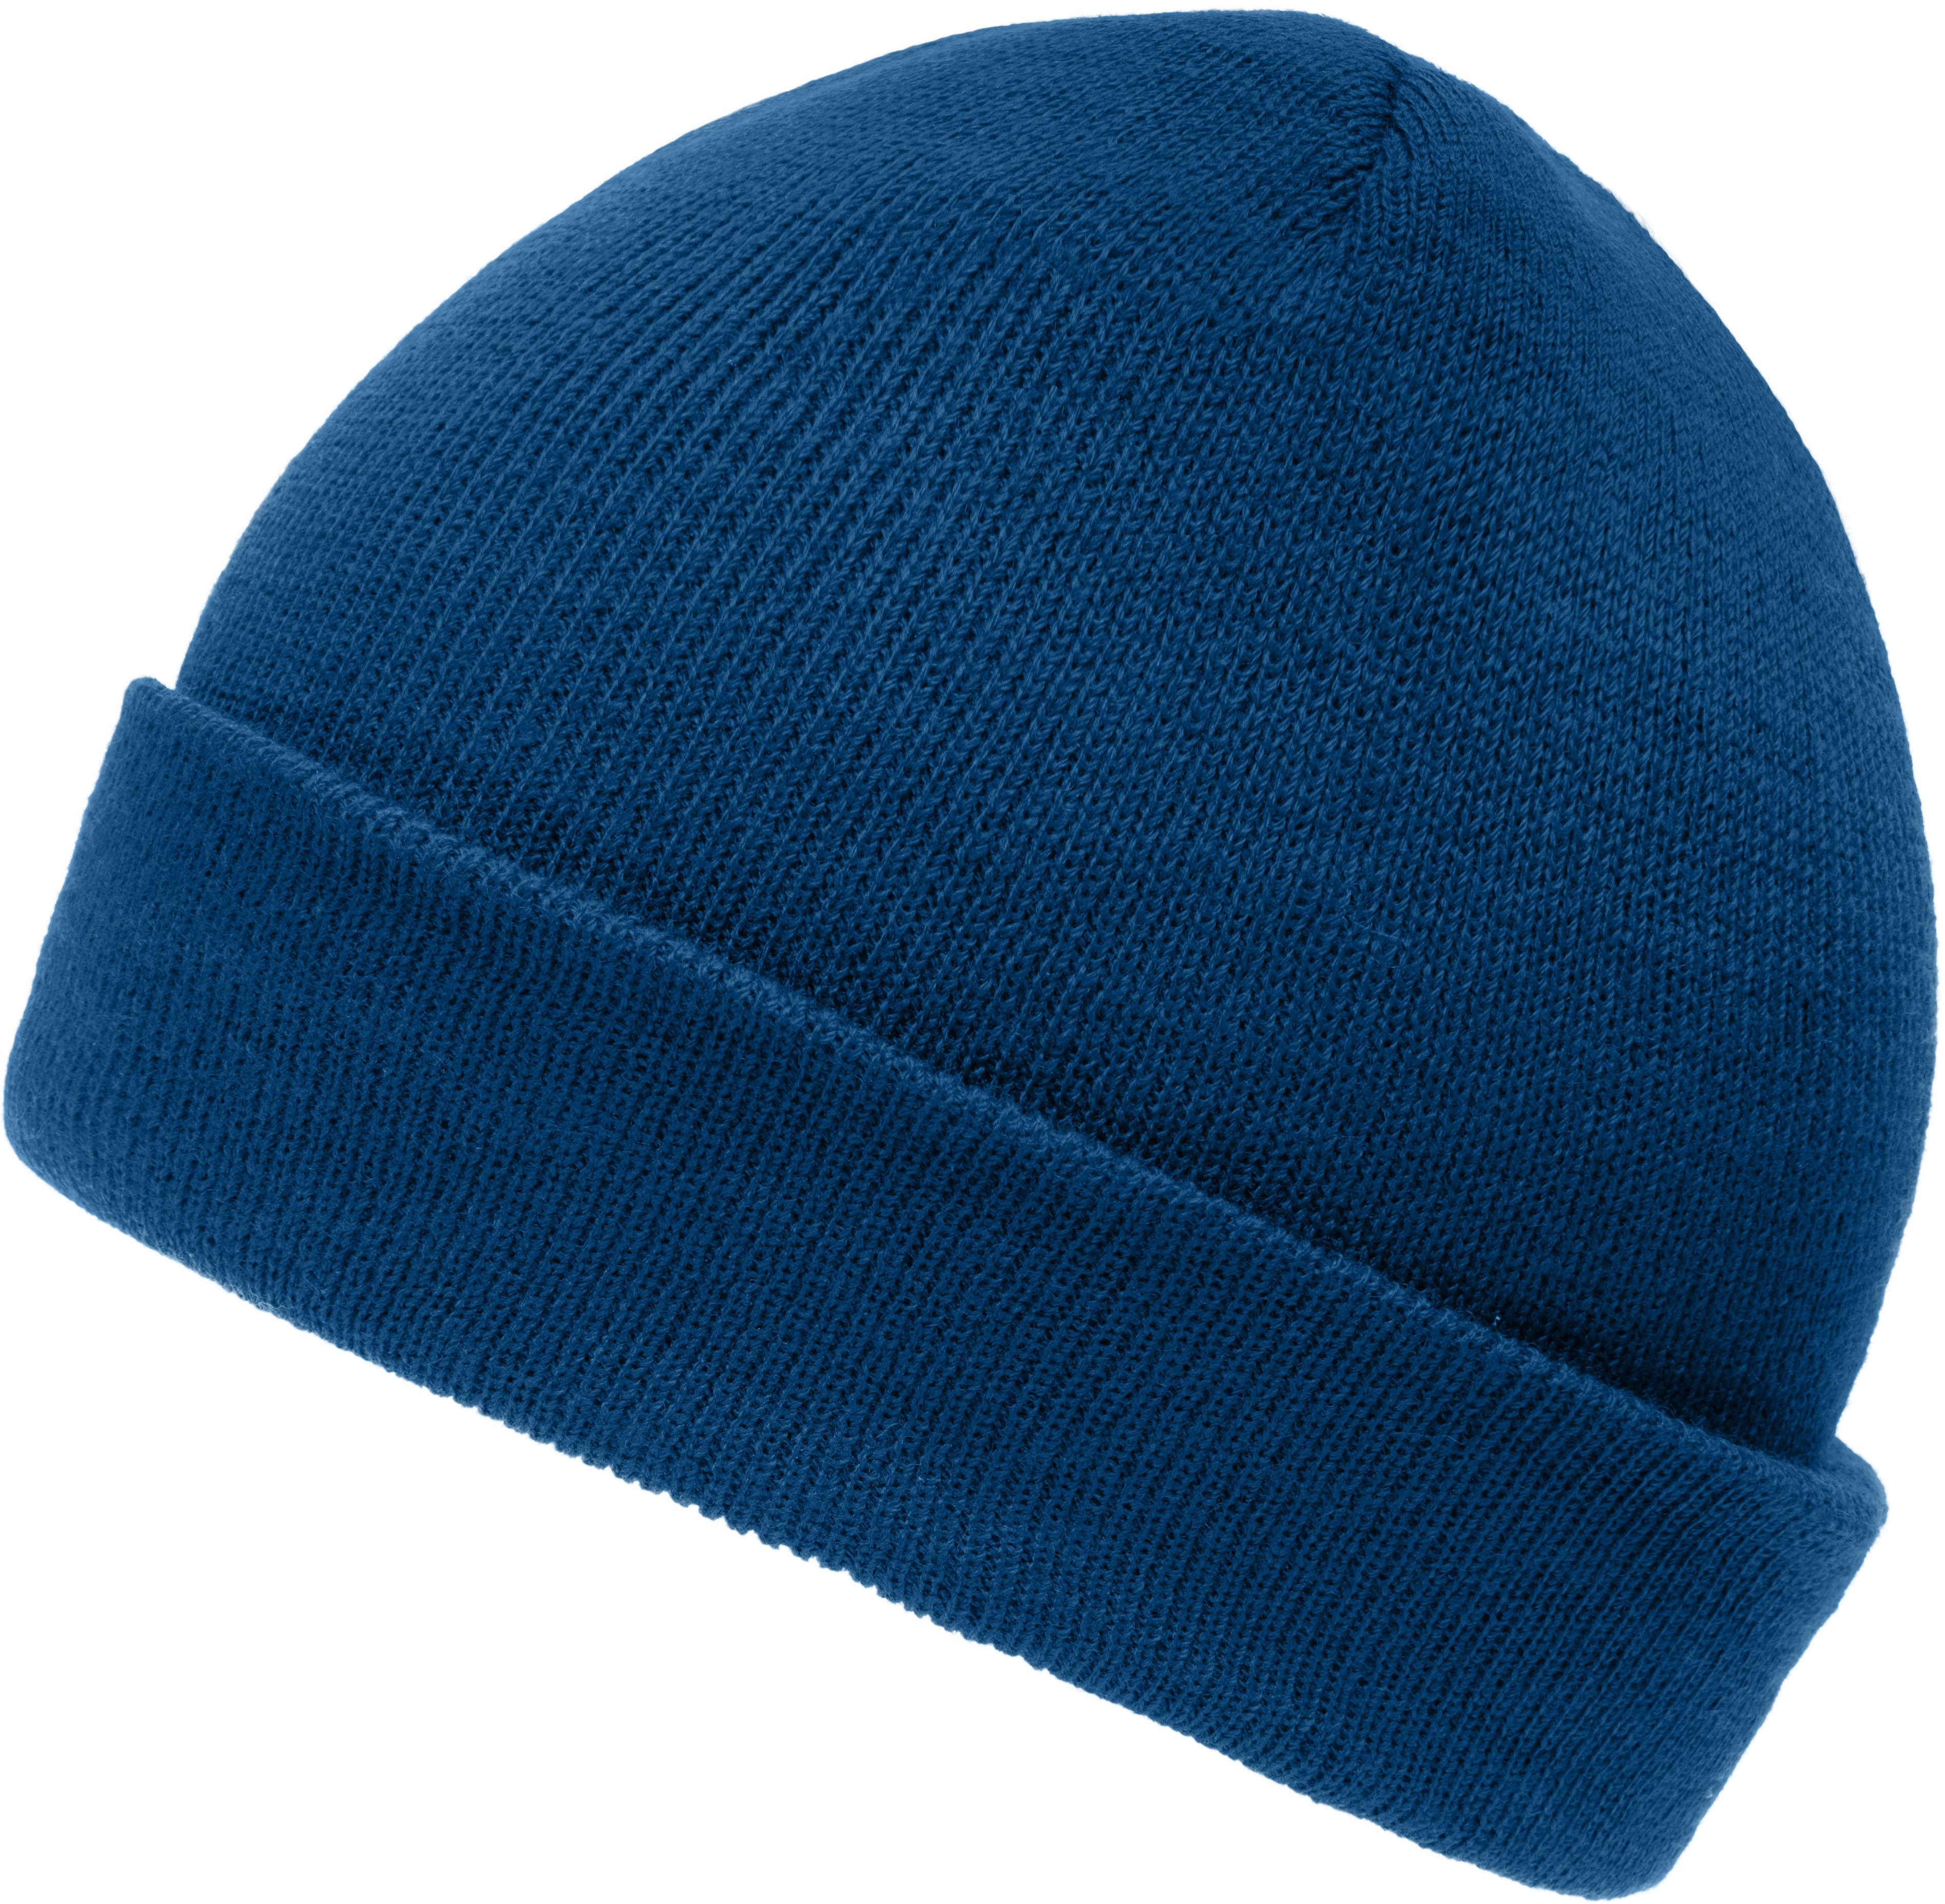 Dětská pletená čepice MB 7501 Barva: námořní modrá, Velikost: uni